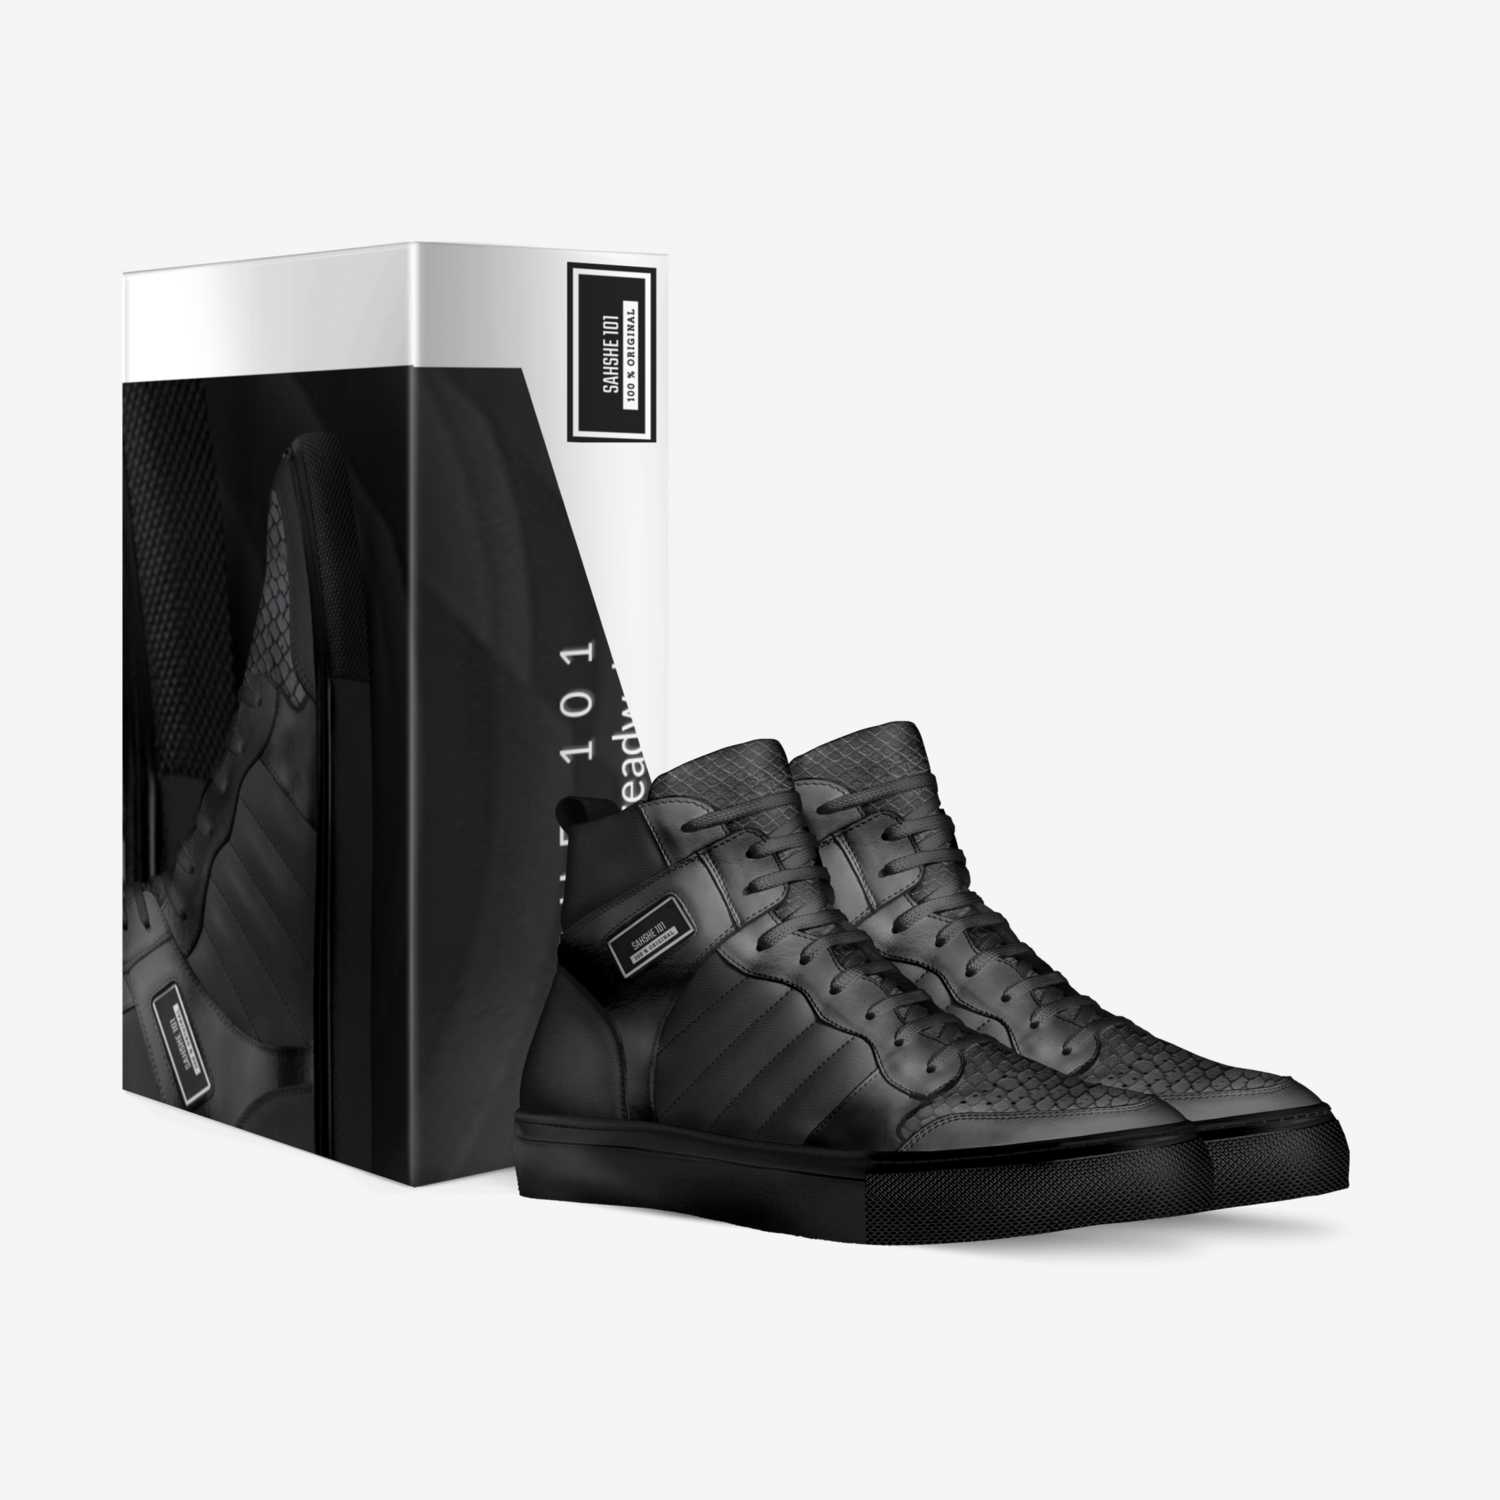 SAHSHE 101 custom made in Italy shoes by Towana Treadwell | Box view